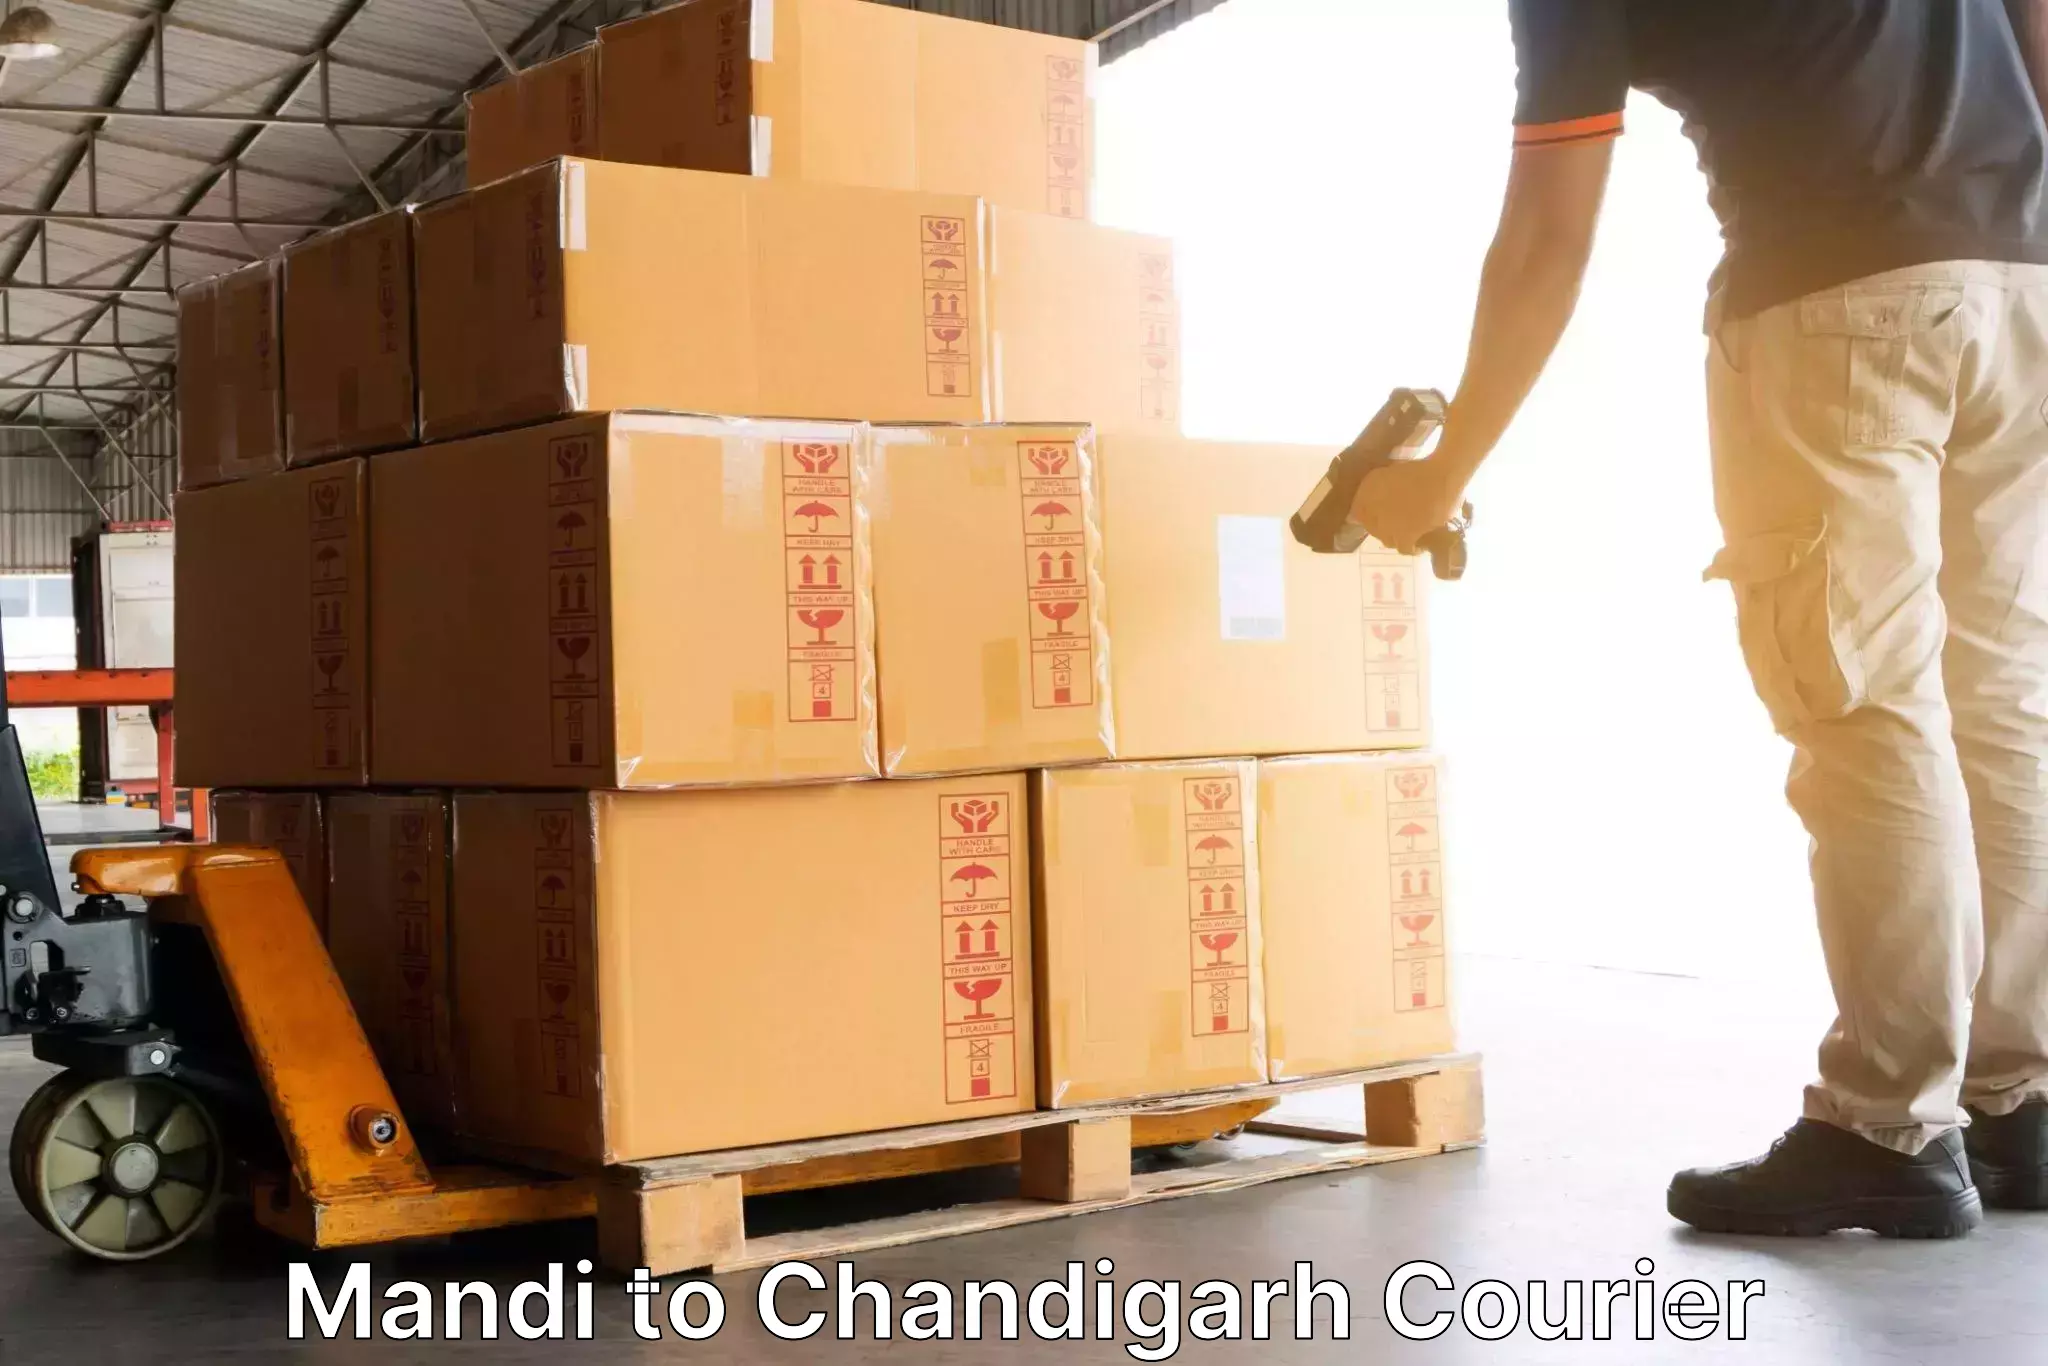 Multi-service courier options Mandi to Panjab University Chandigarh